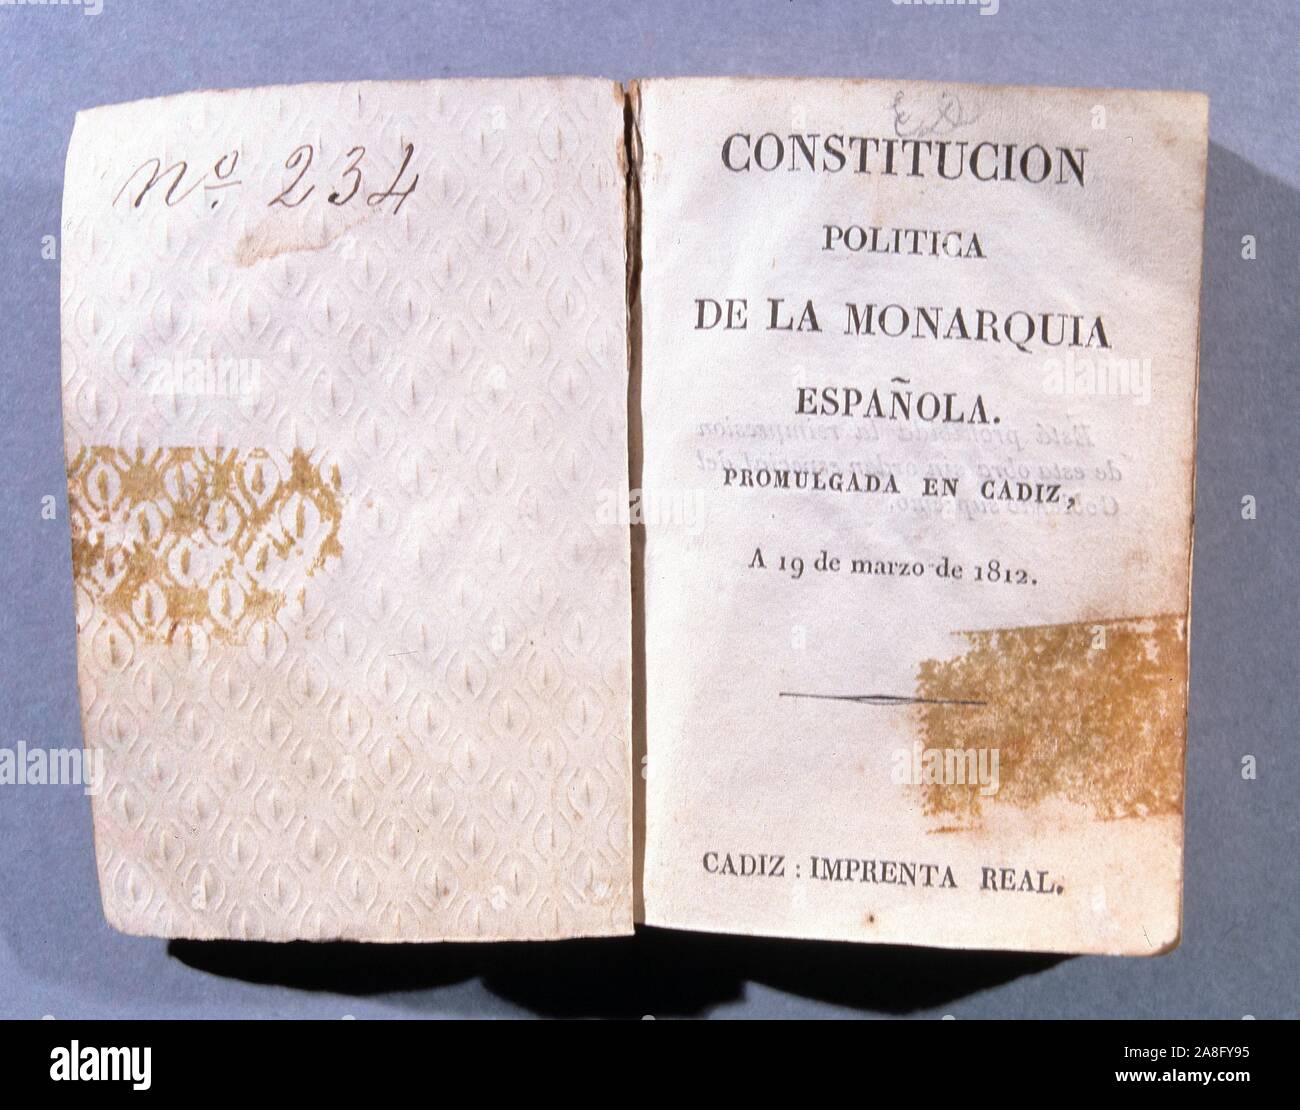 FERNANDO VII REY DE ESPAÑA.1784 - 1833 CONSTITUCION DE 1812 EJEMPLAR DEPOSITADO EN EL MUSEO HISTORICO DE CADIZ. Stock Photo